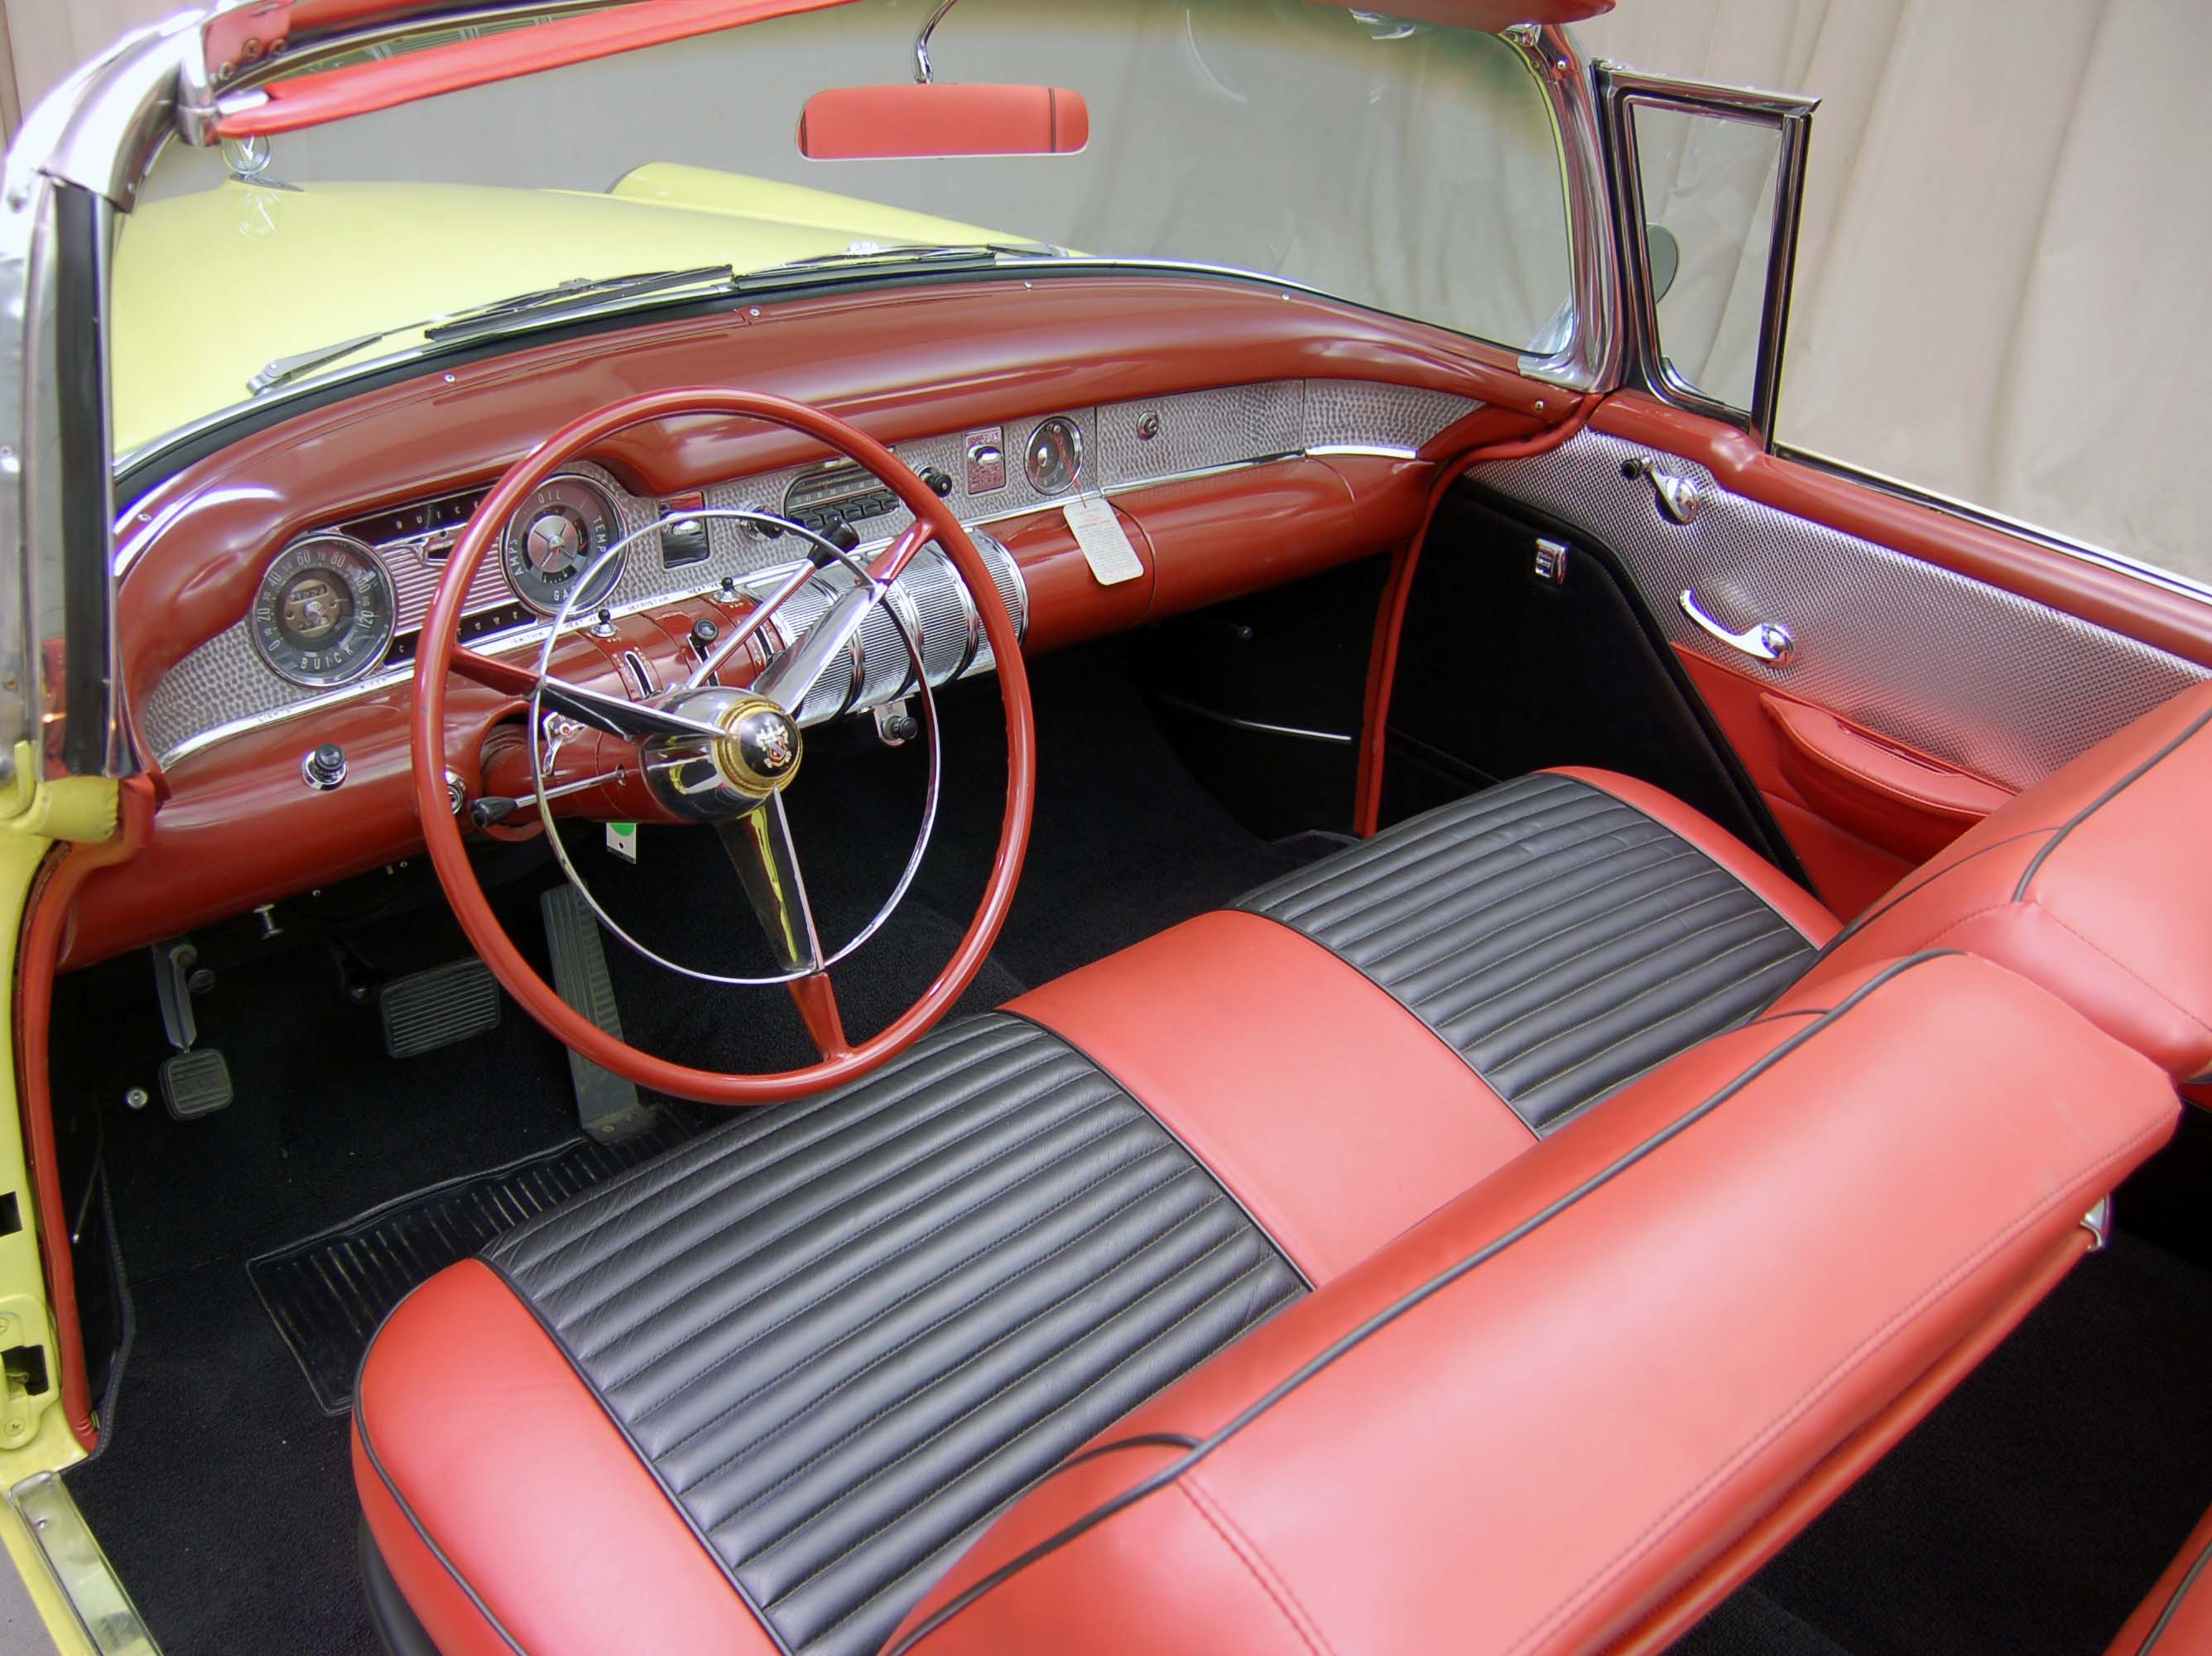 1958 buick century model 61